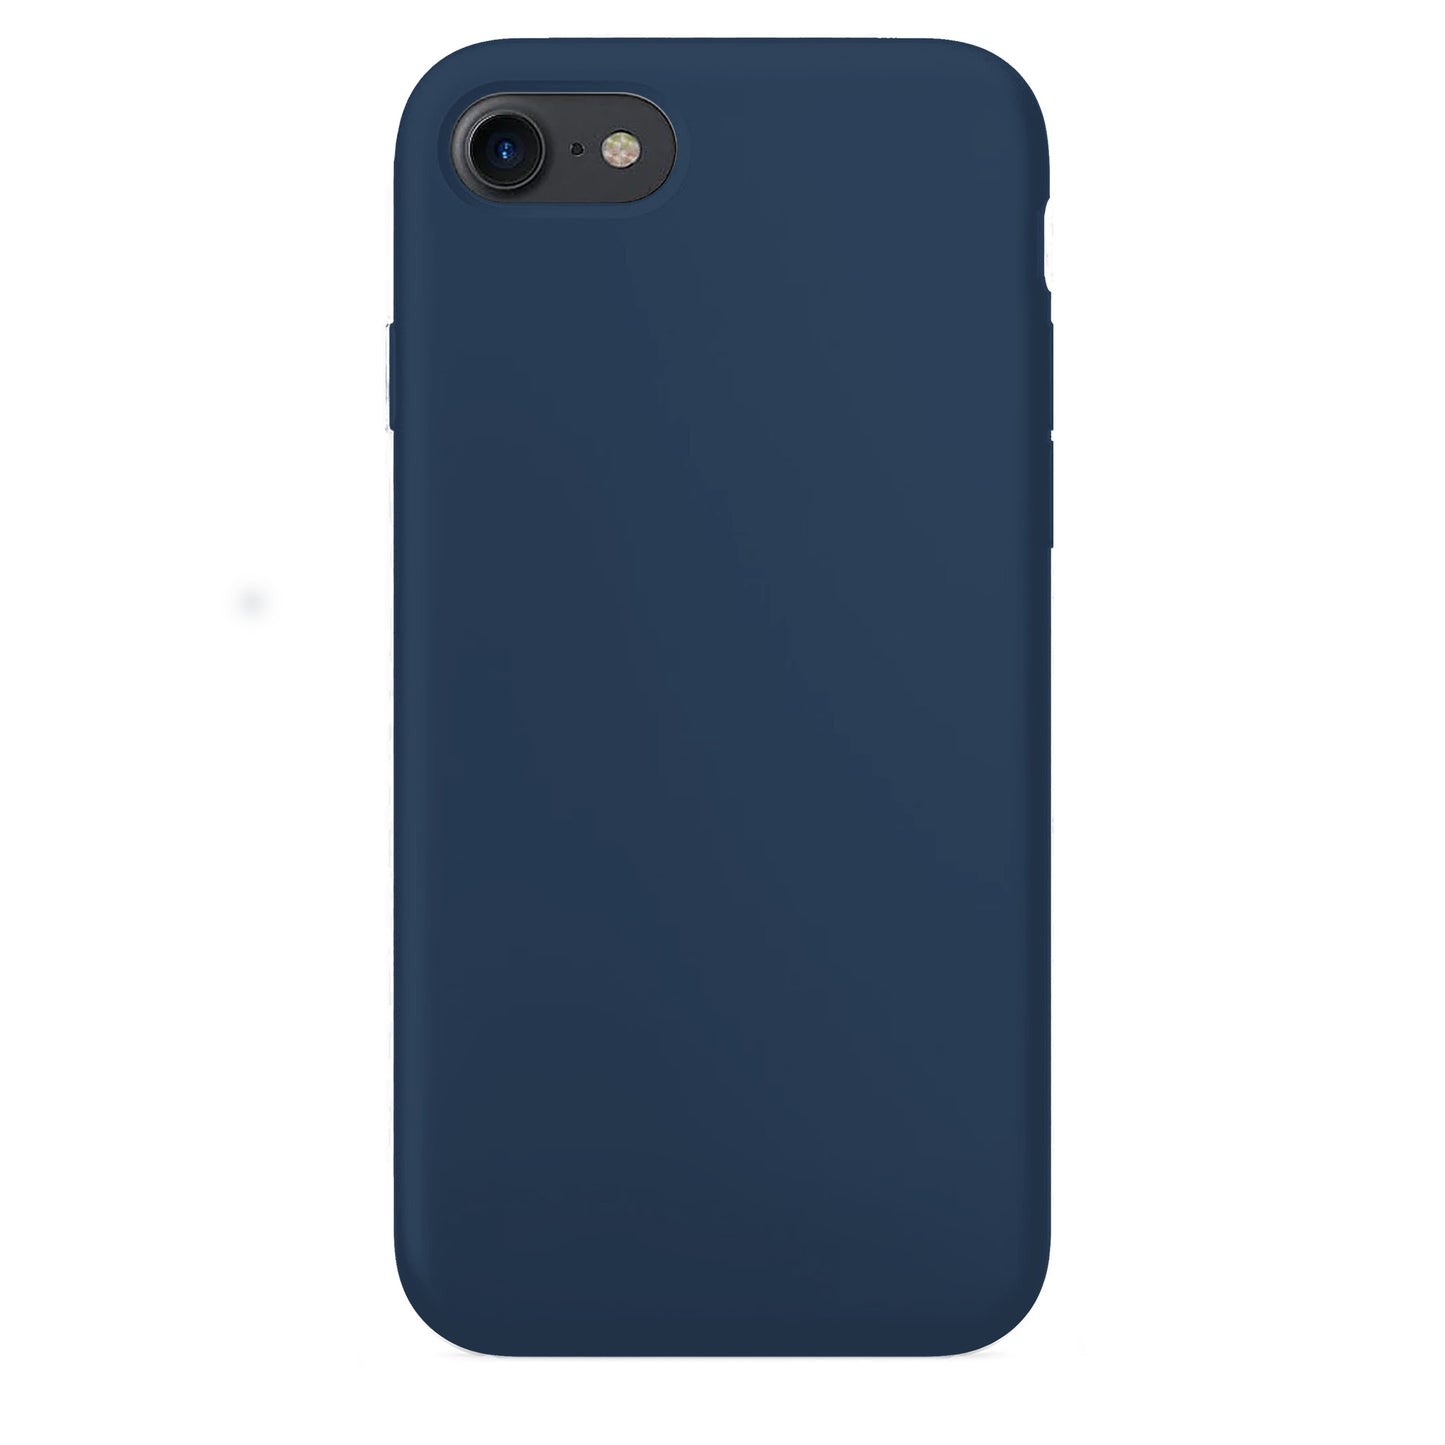 Cobalt Blue Silikon Hülle für iPhone